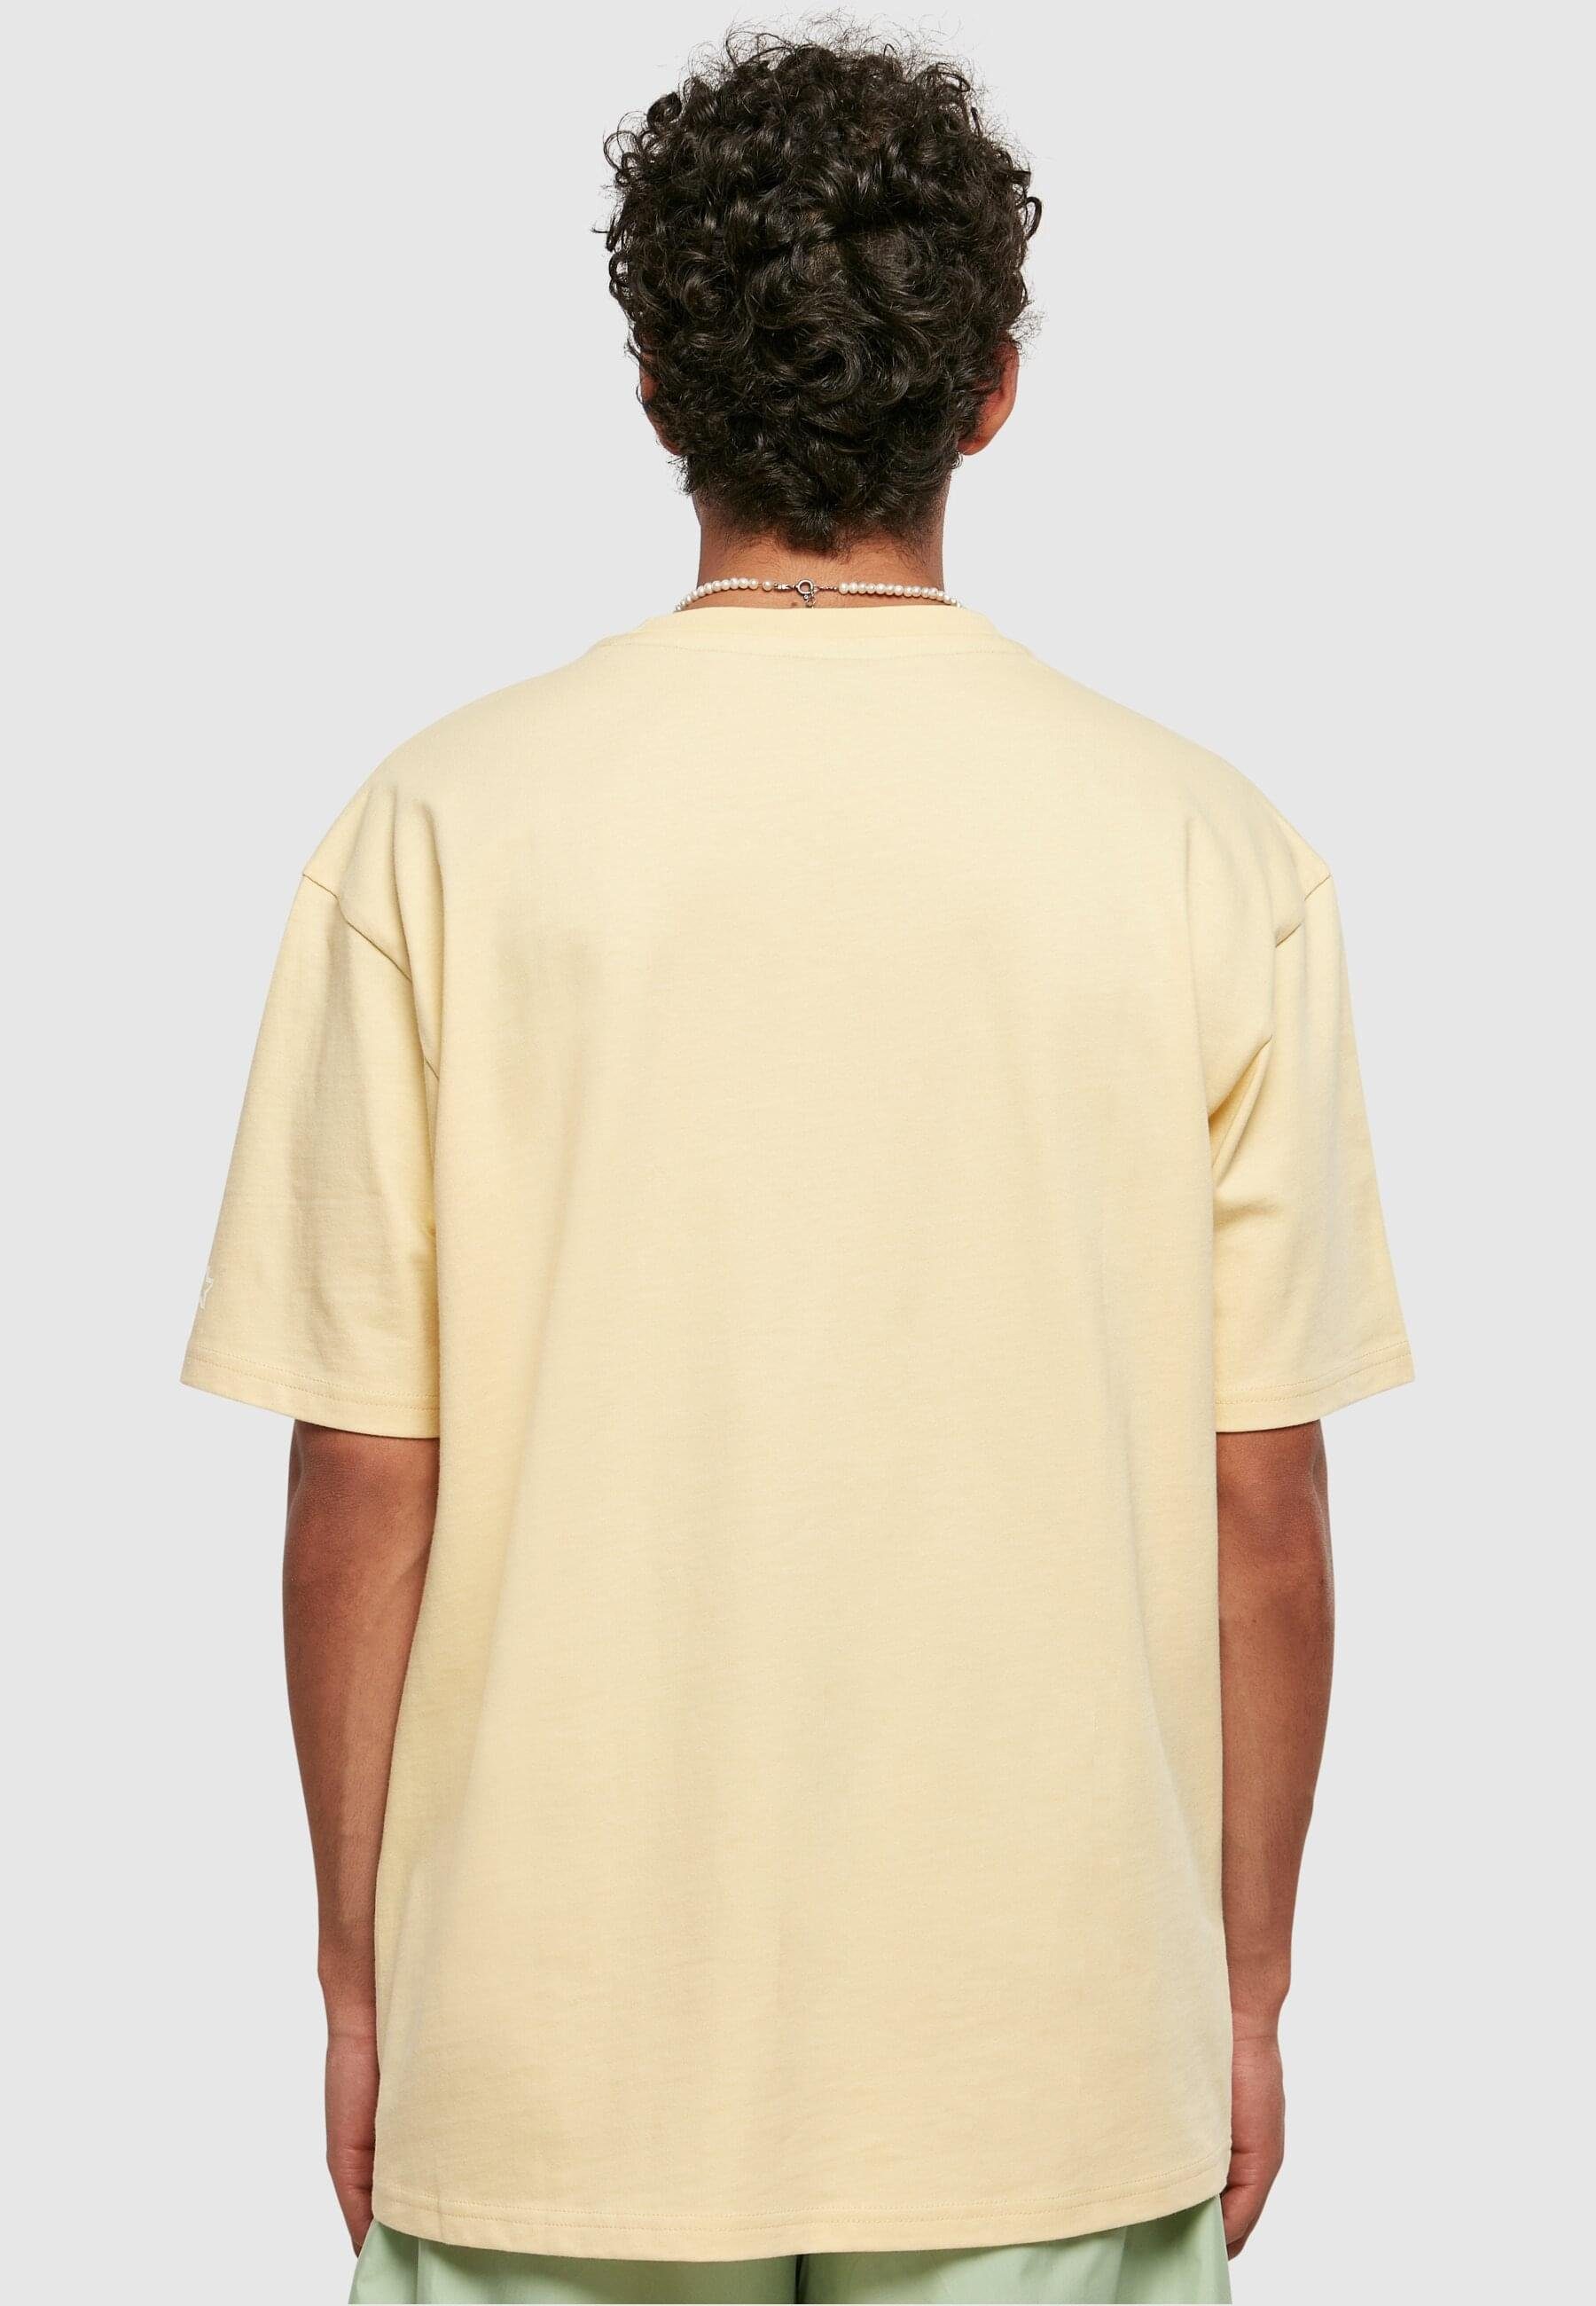 Starter Black Label T-Shirt Herren Palm Tee lightyellow (1-tlg) Starter